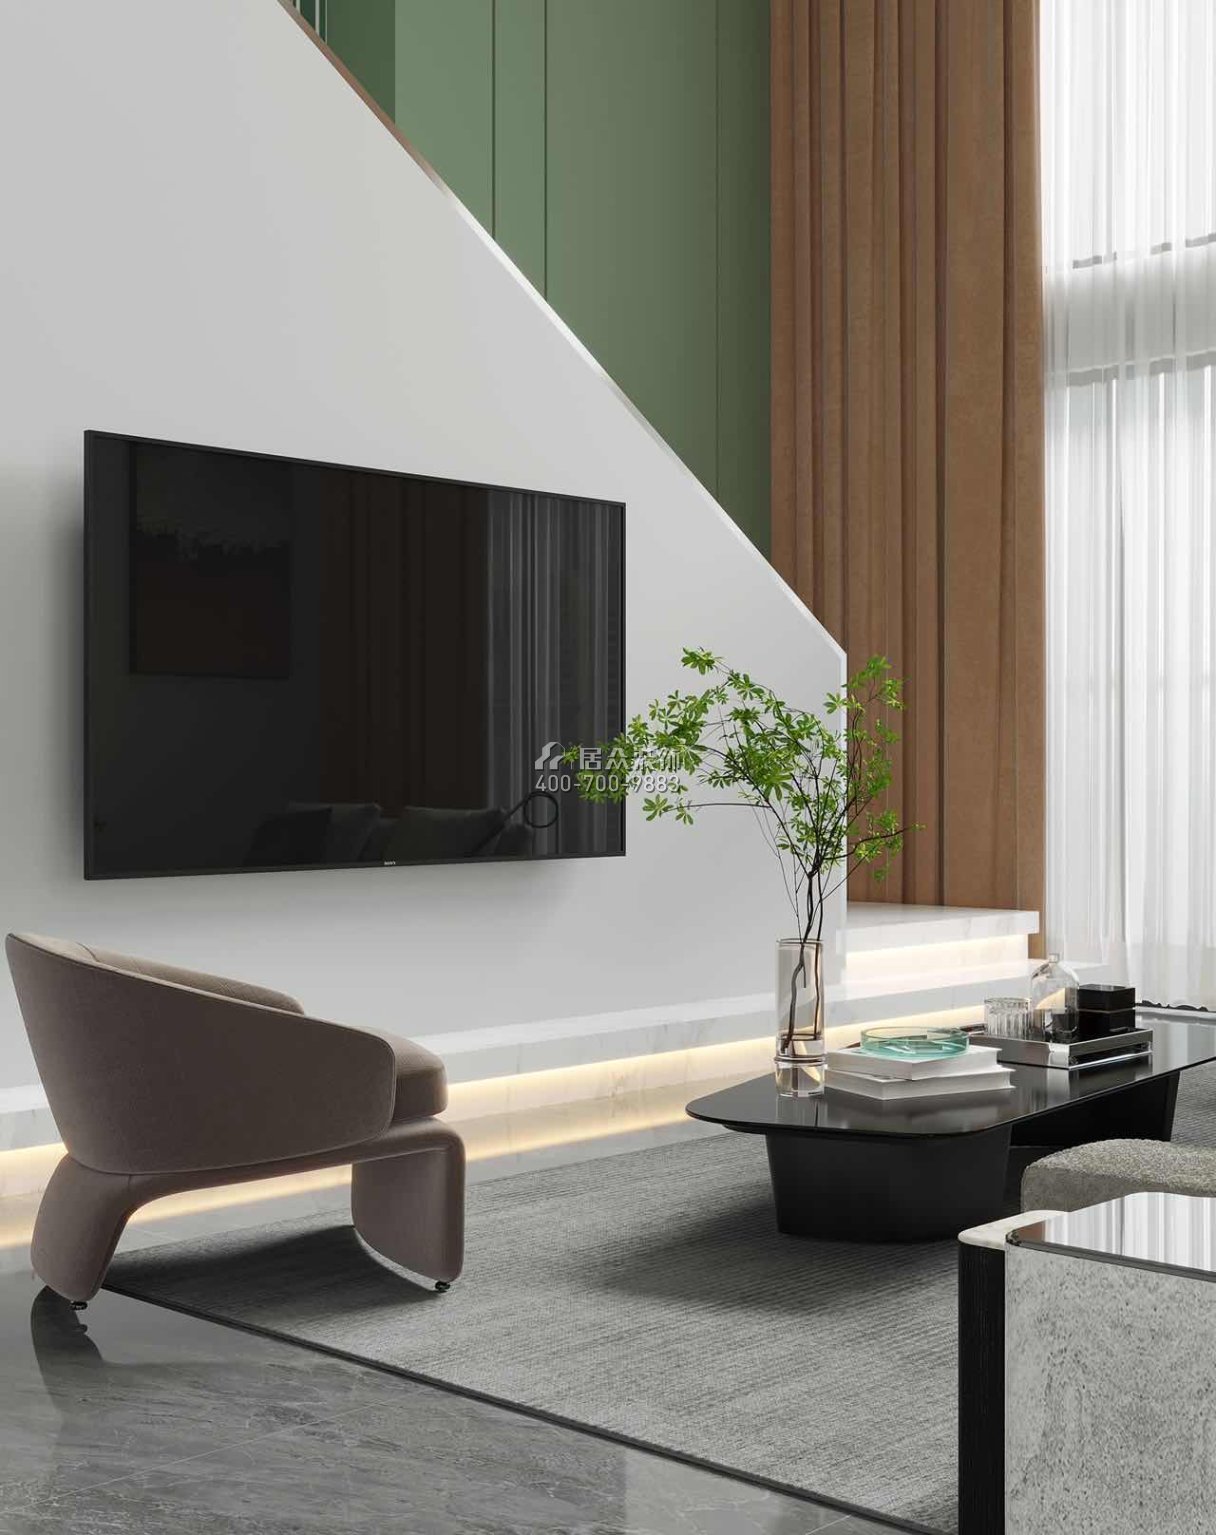 華發世紀城240平方米現代簡約風格復式戶型客廳裝修效果圖